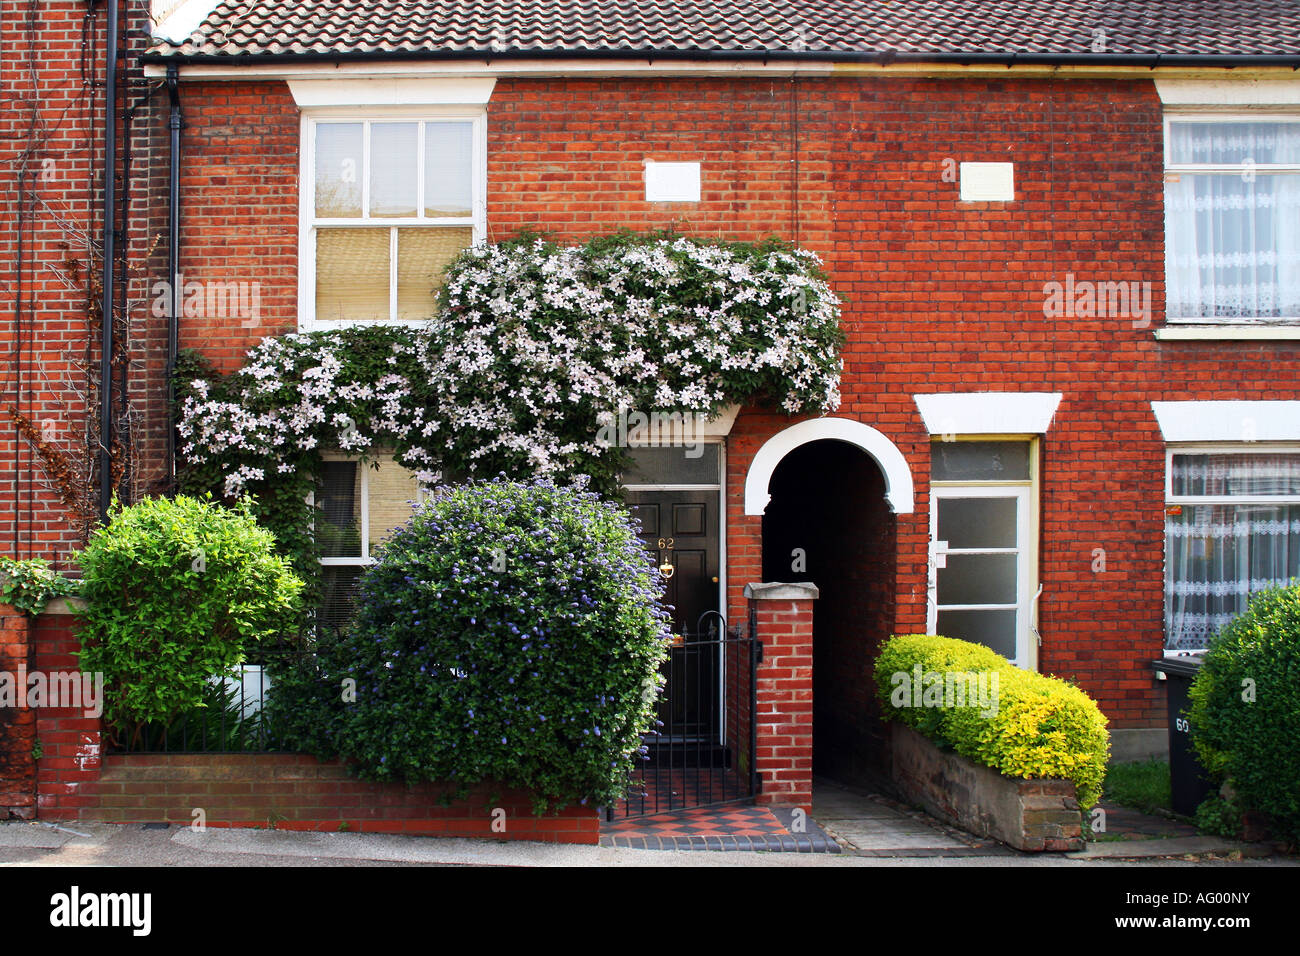 Facade of small terrace house garden in English city Stock Photo